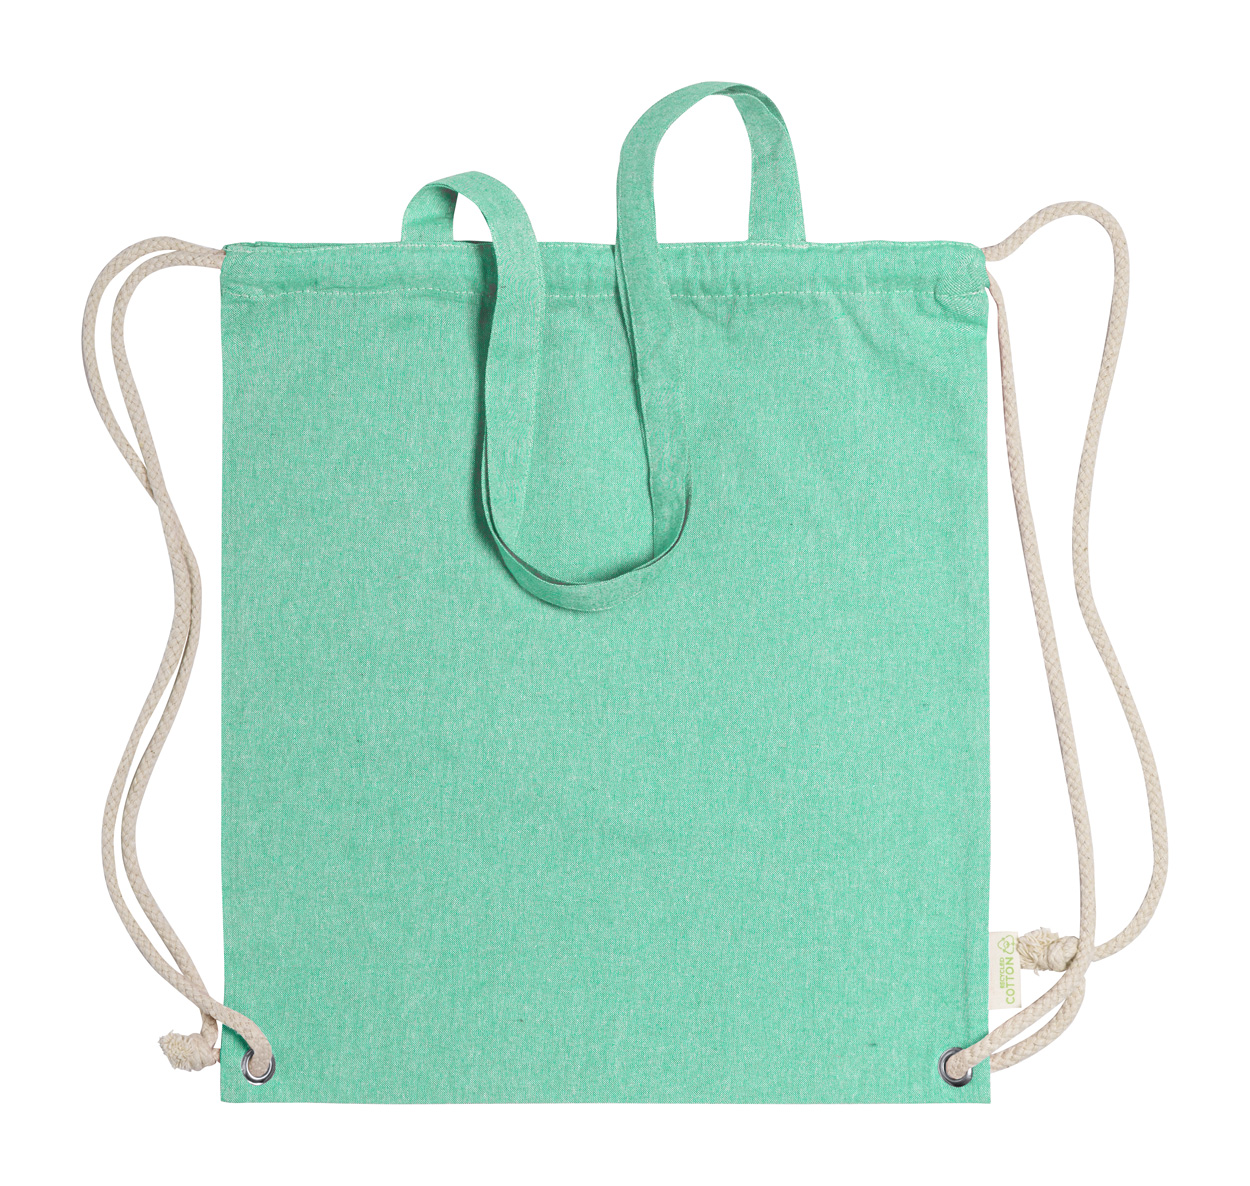 Fenin drawstring bag - green